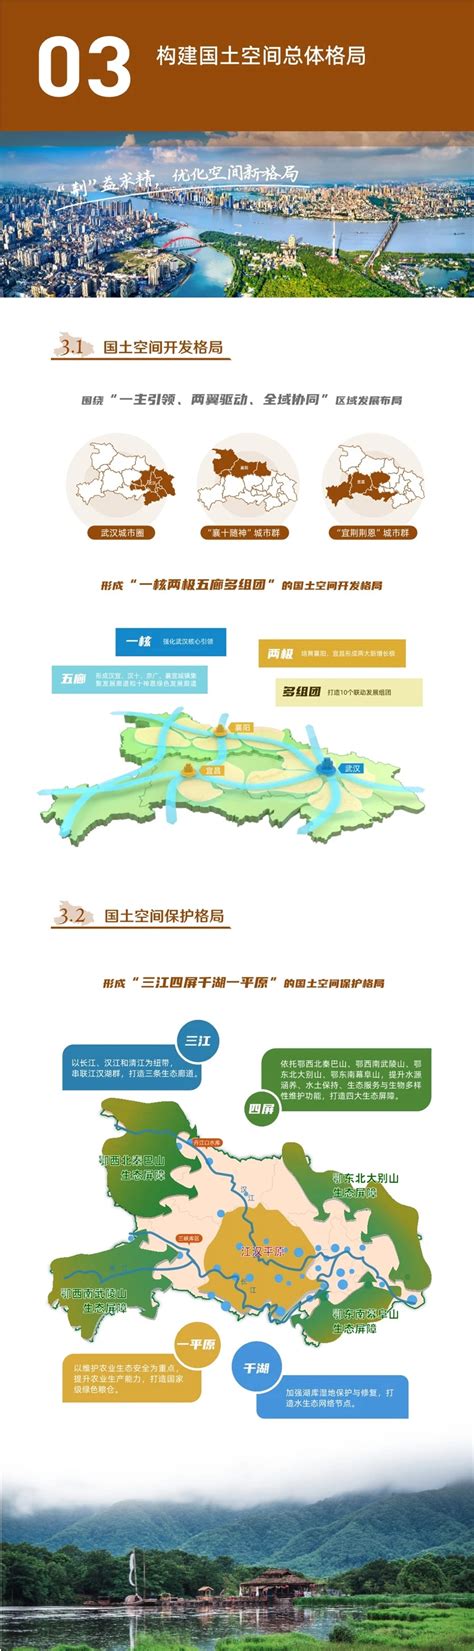 《湖北省流域综合治理和统筹发展规划纲要》印发 - 园区世界